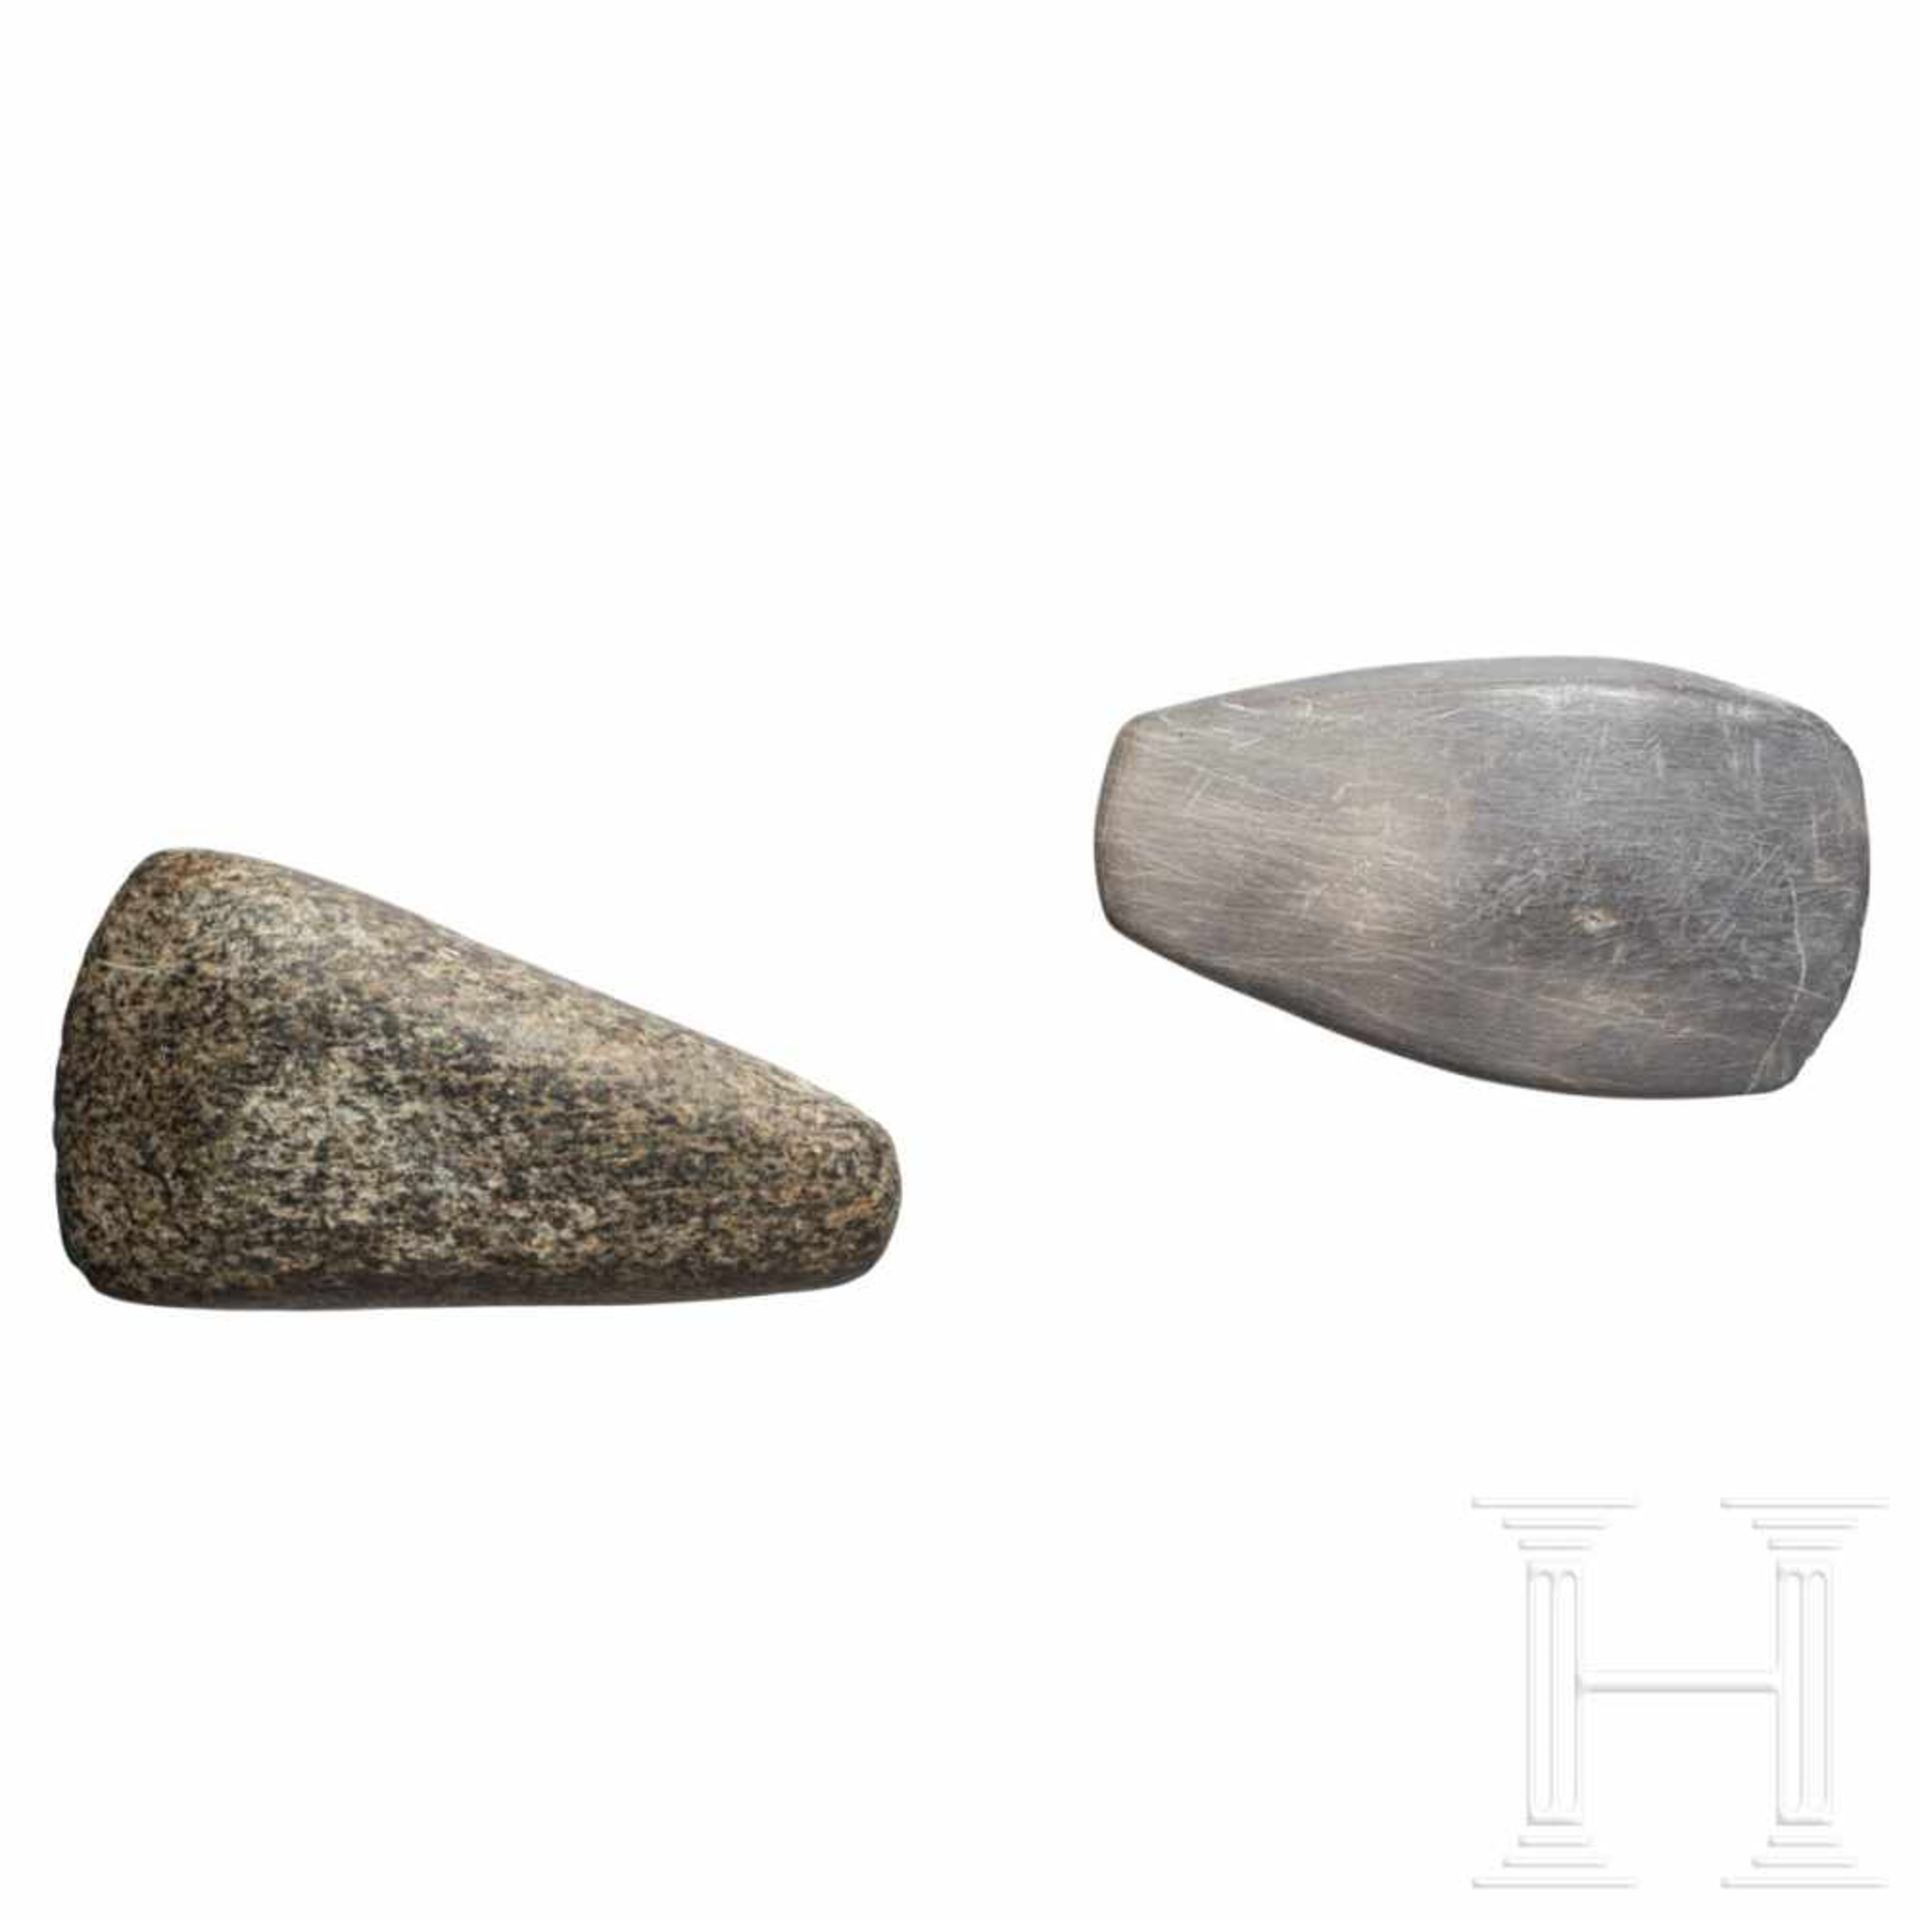 Zwei Steinbeile, Westeuropa, Neolithikum, ca. 5000 v. Chr.